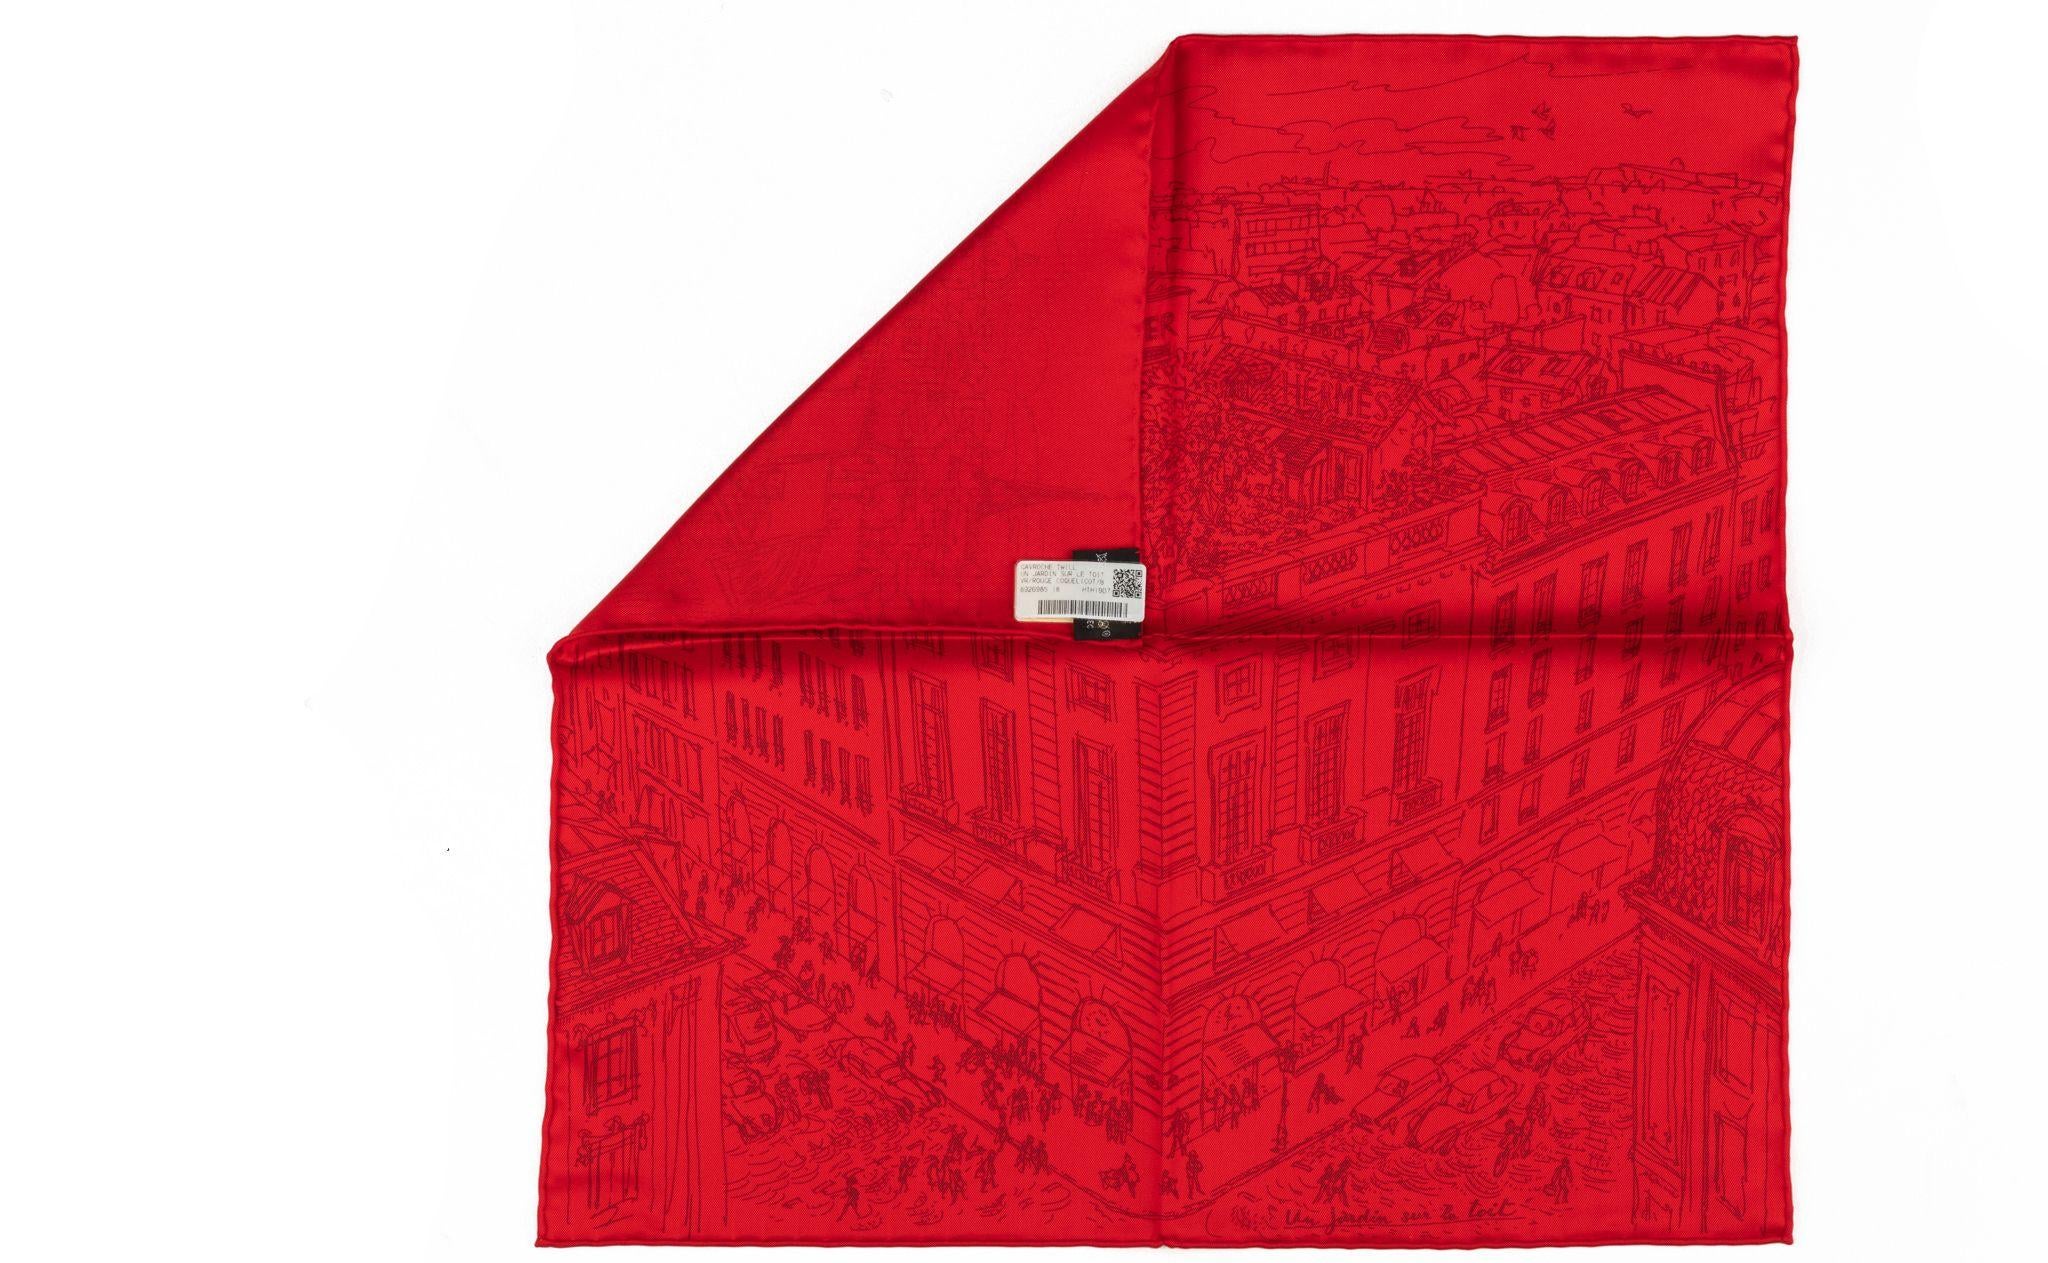 Gavroche en soie de la marque Hermès, couleur rouge, design du magasin de la rue Fouburg. Livré avec sa boîte d'origine.